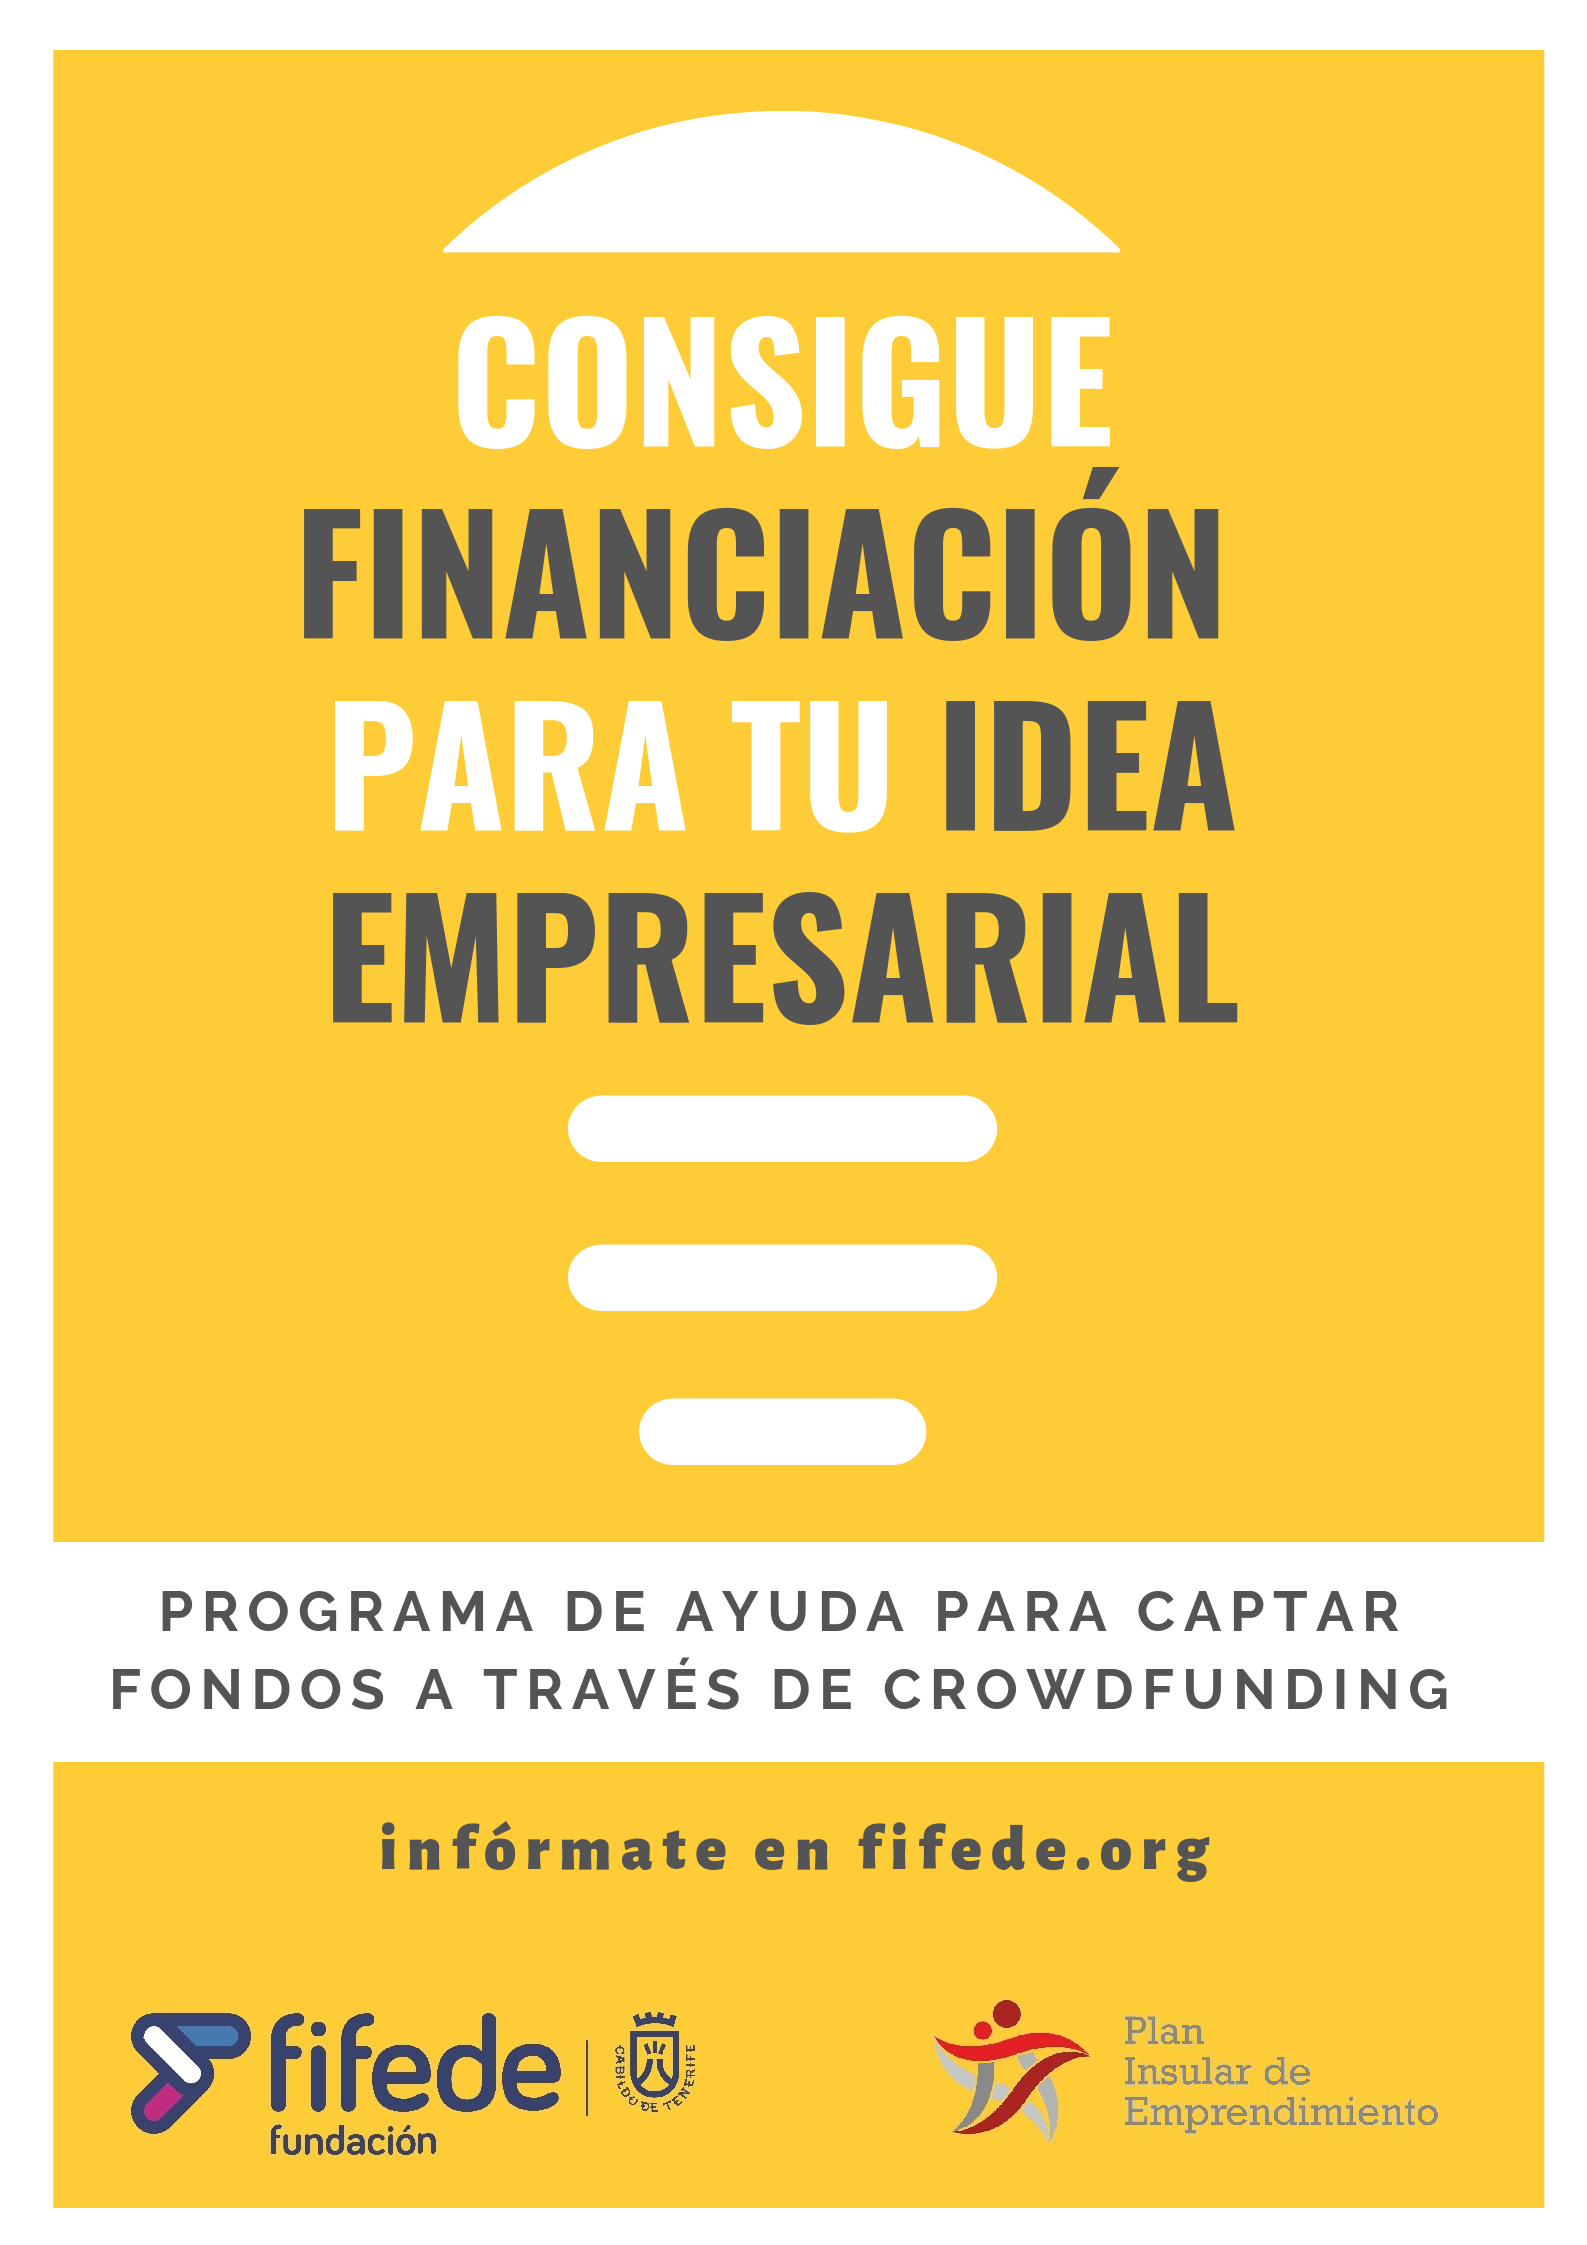 Cartel del programa de ayuda para captar fondos a través de crowdfunding de Fifede